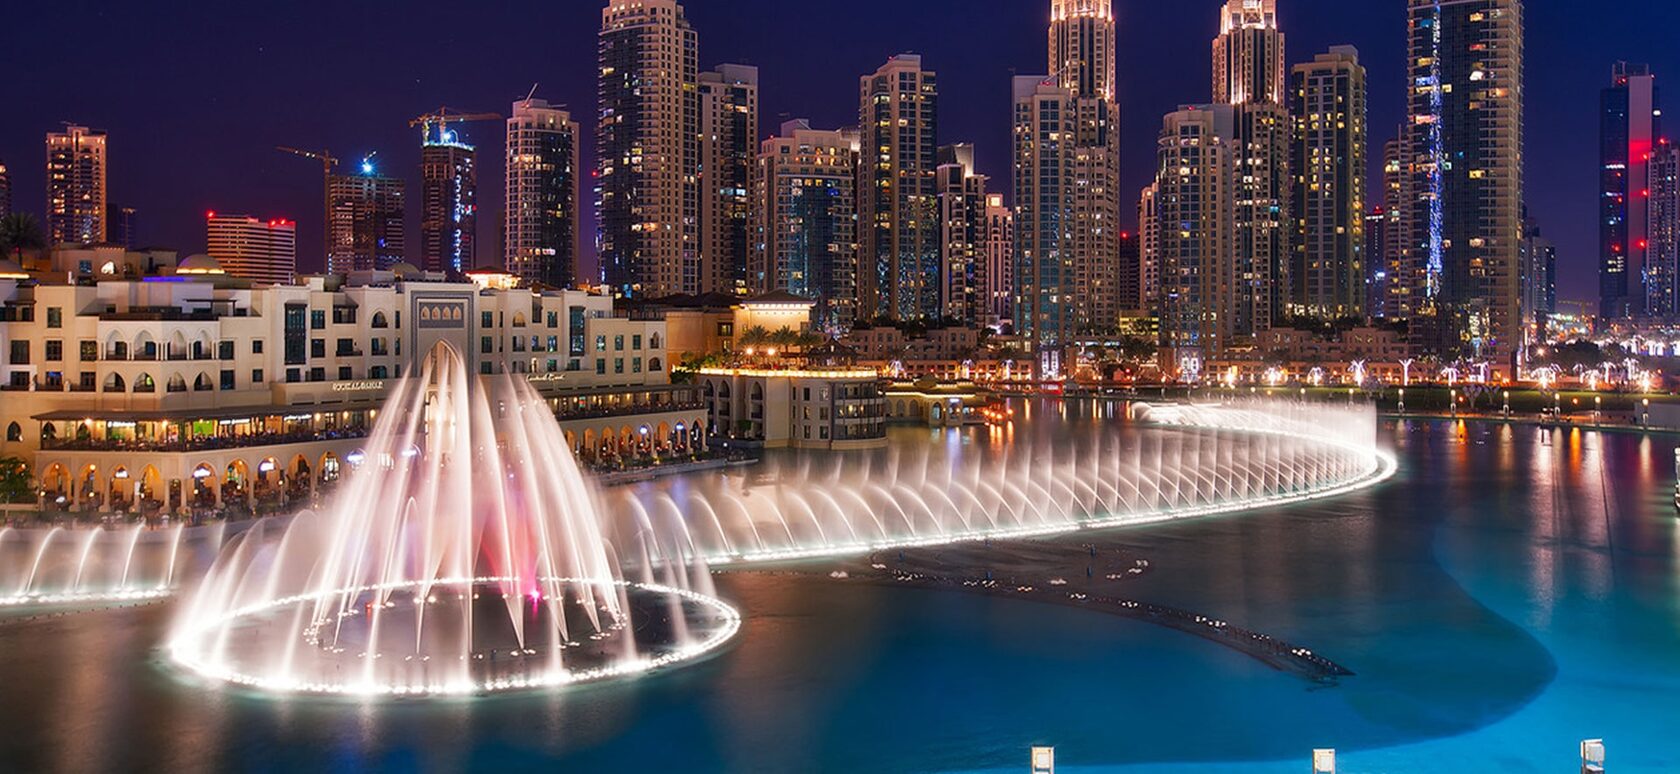 https://ubigo.ae/wp-content/uploads/2022/10/Dubai-Fountains.jpg